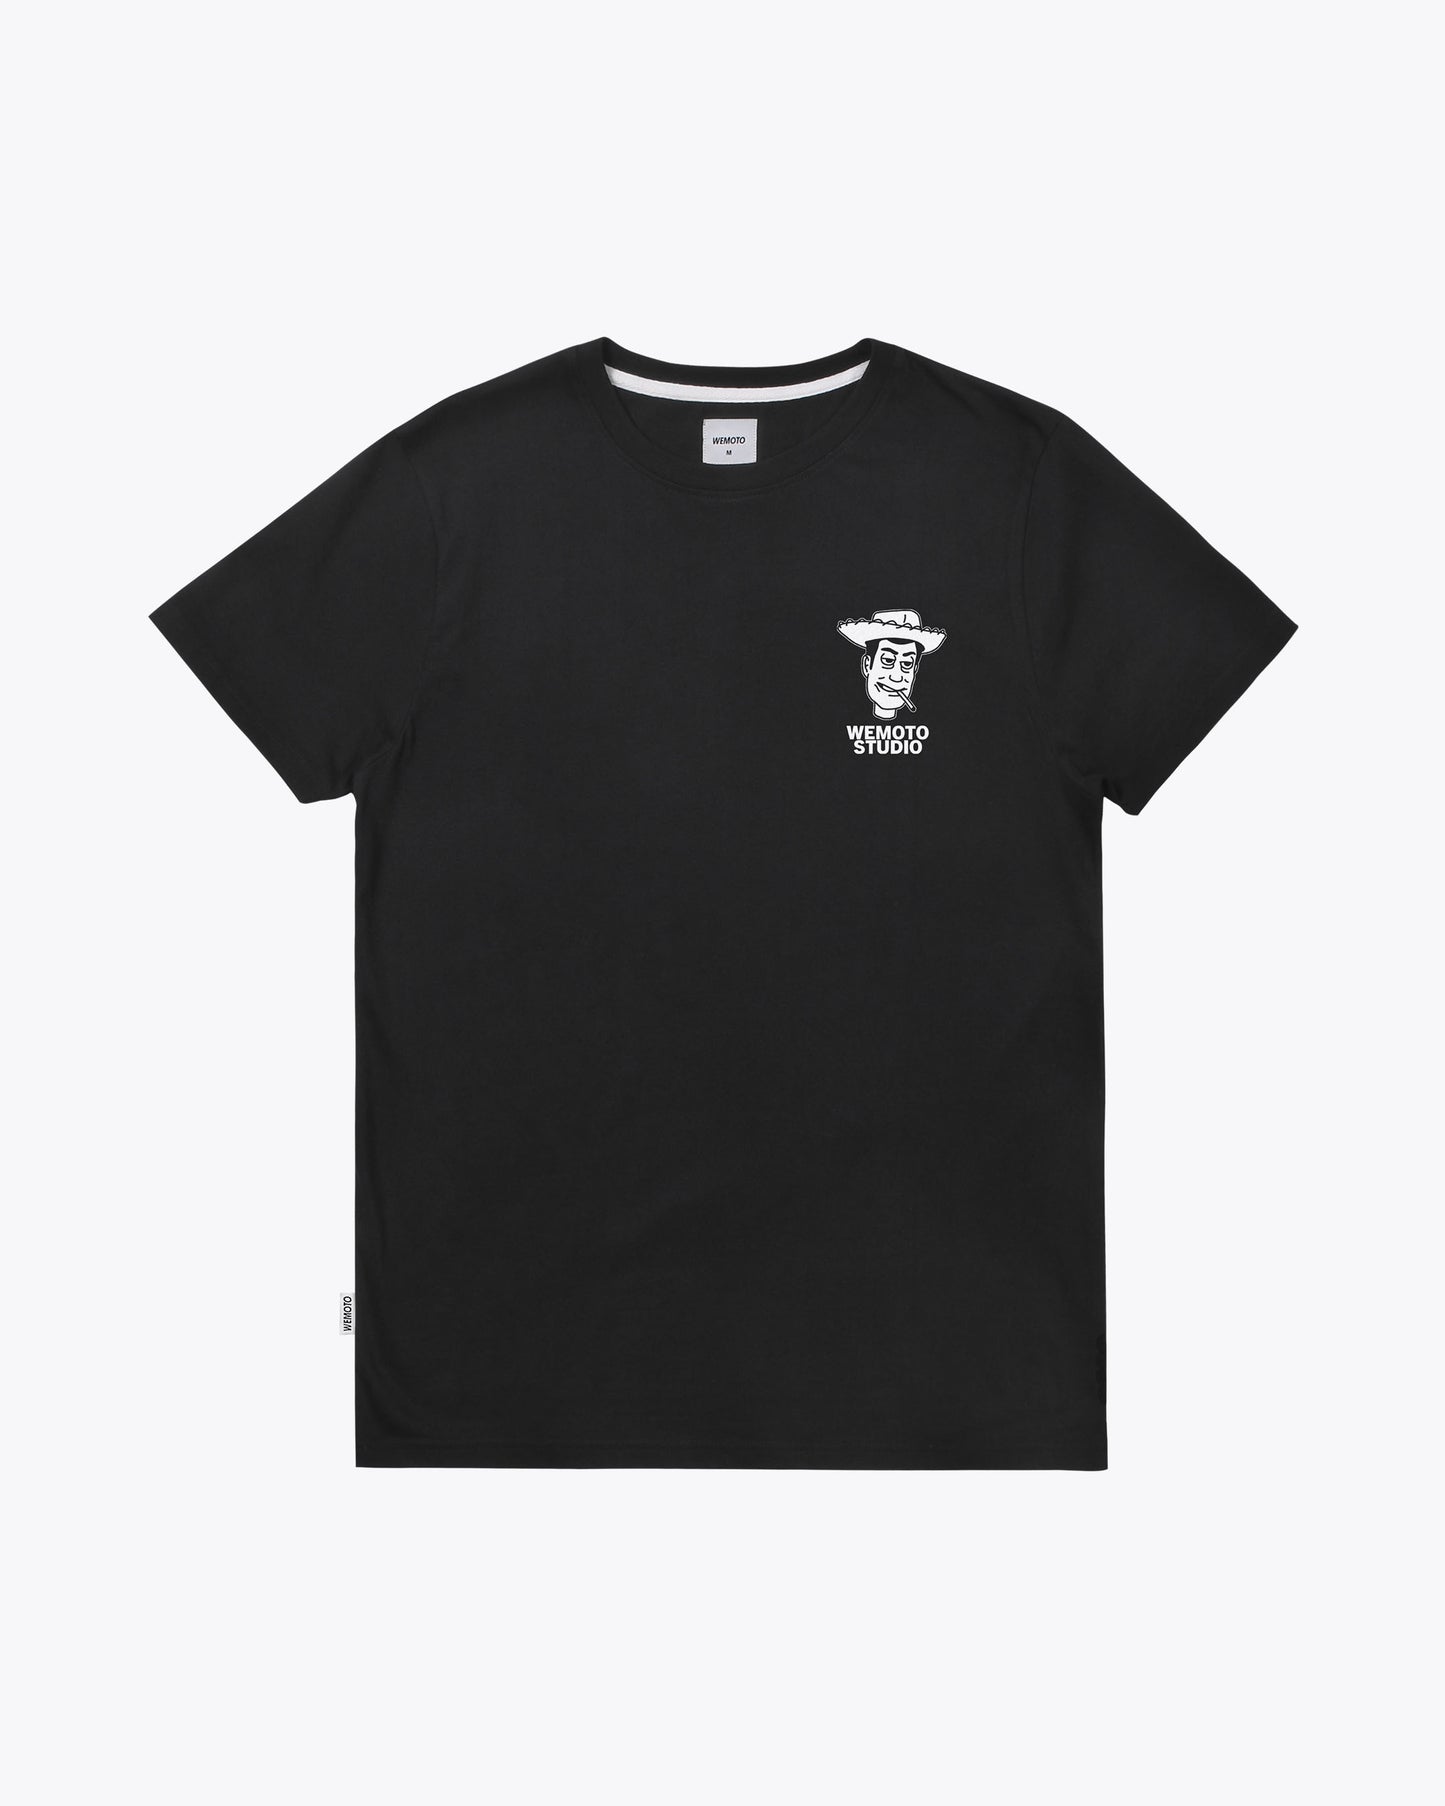 vsita frontal camiseta negra con logo en pecho derecho